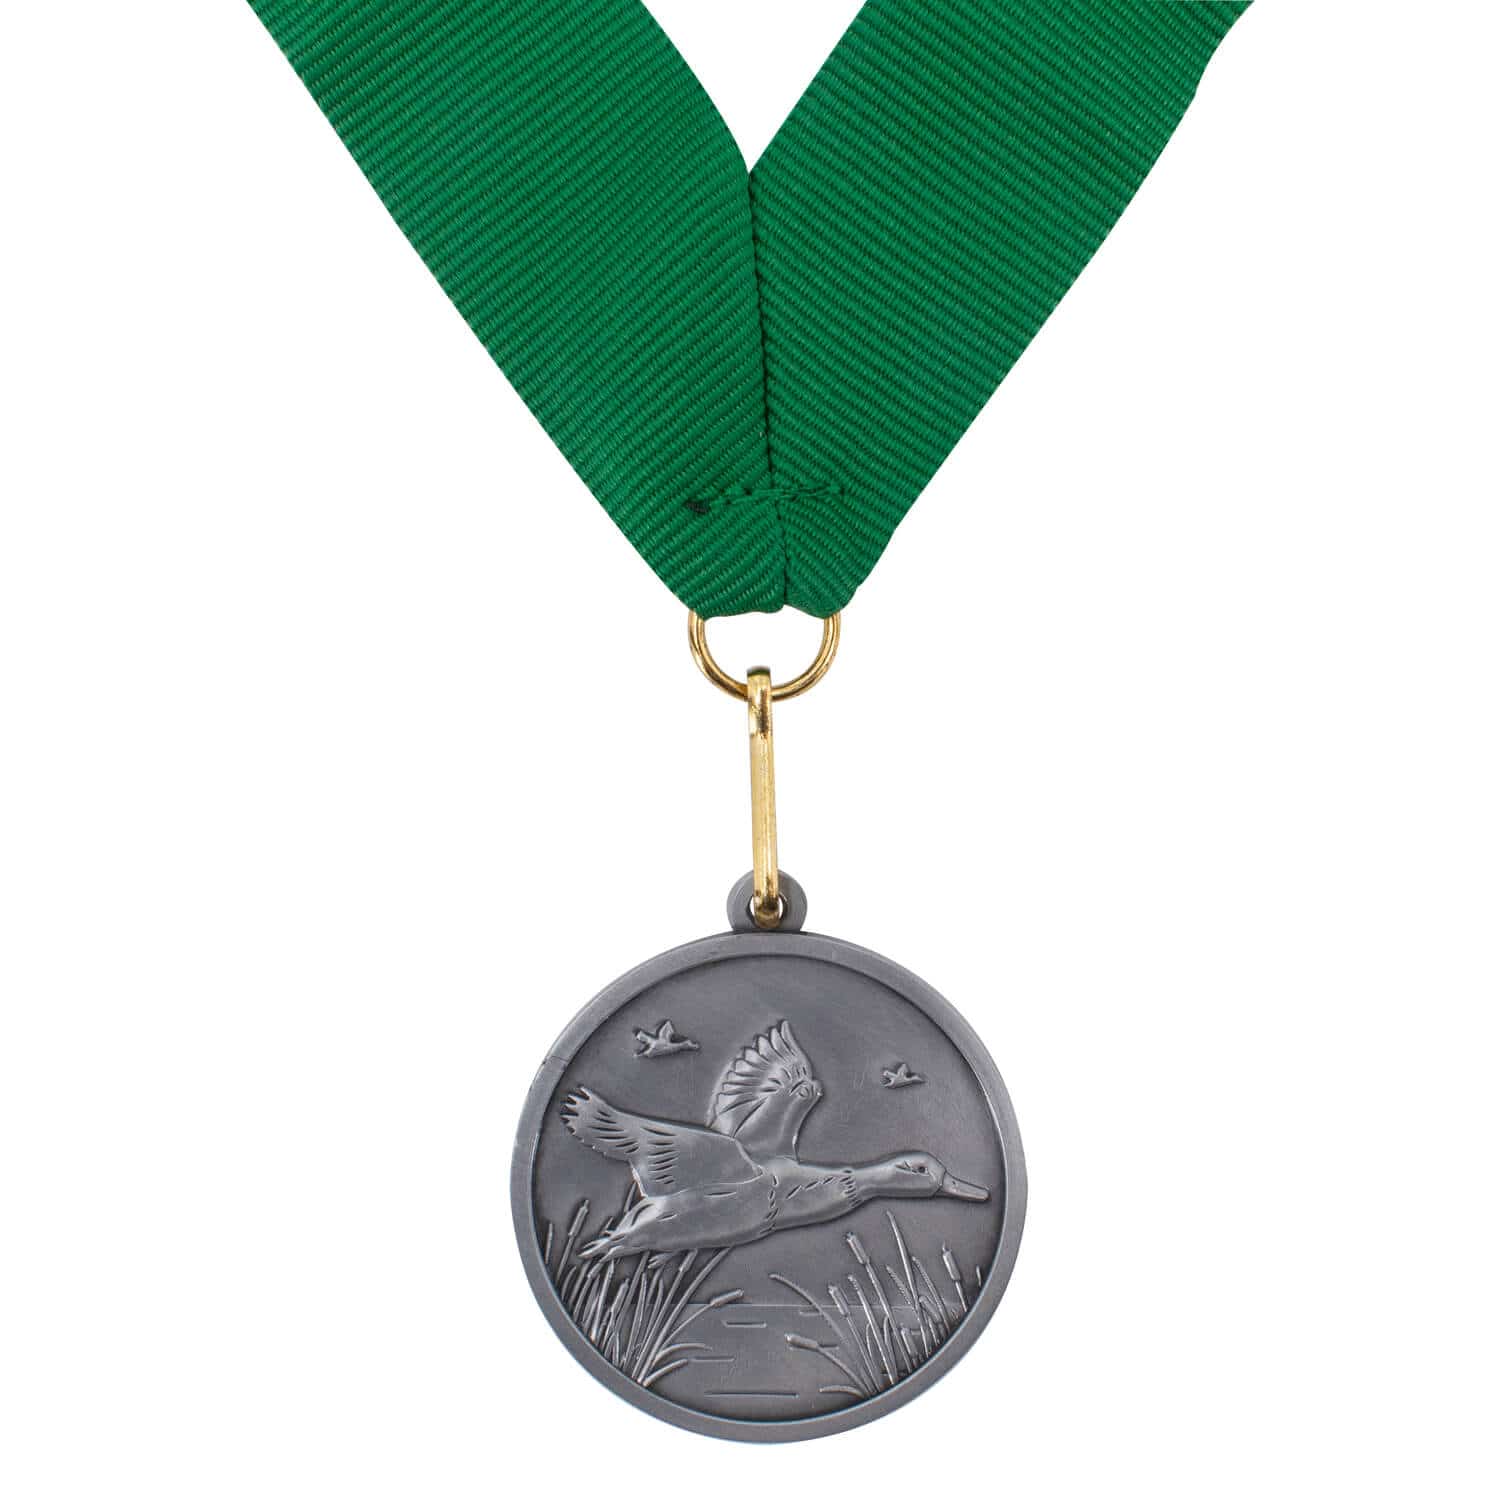 Jagdscheibe "Weidmann" mit Jagd-Medaillen und grünem Band